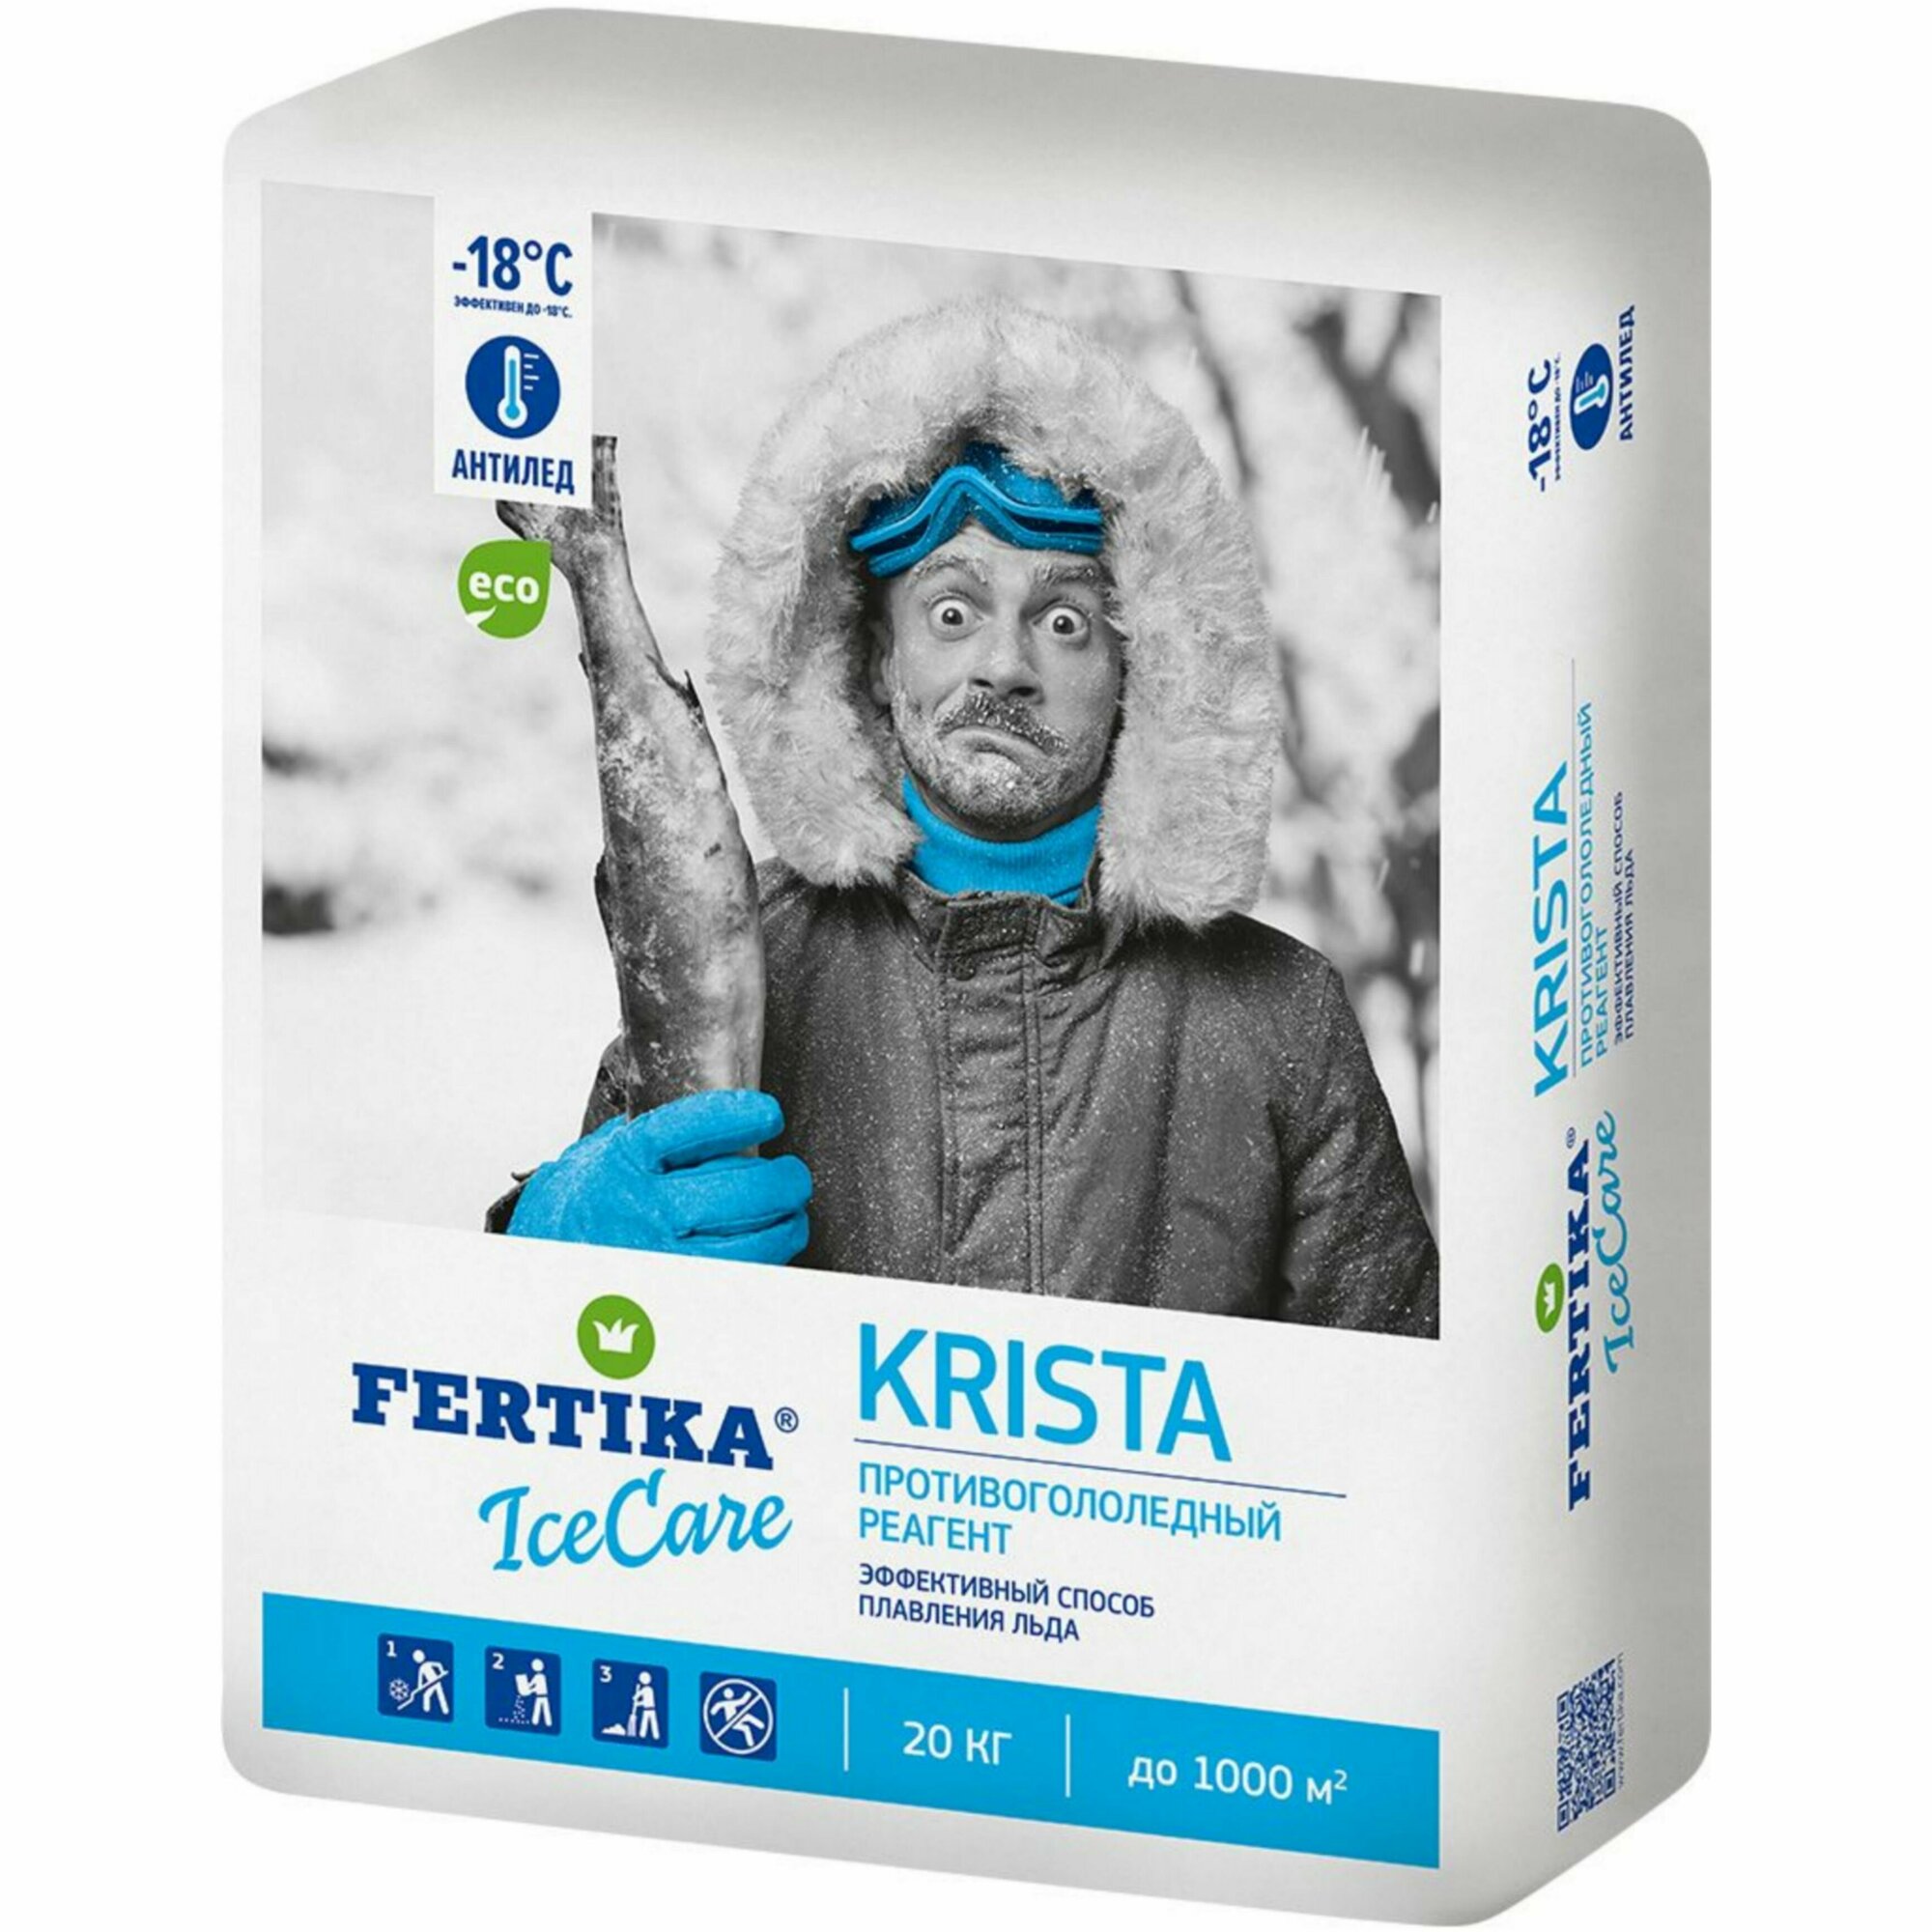 Противогололёдное средство Фертика (Fertika) IceCare Krista 20 кг мешок